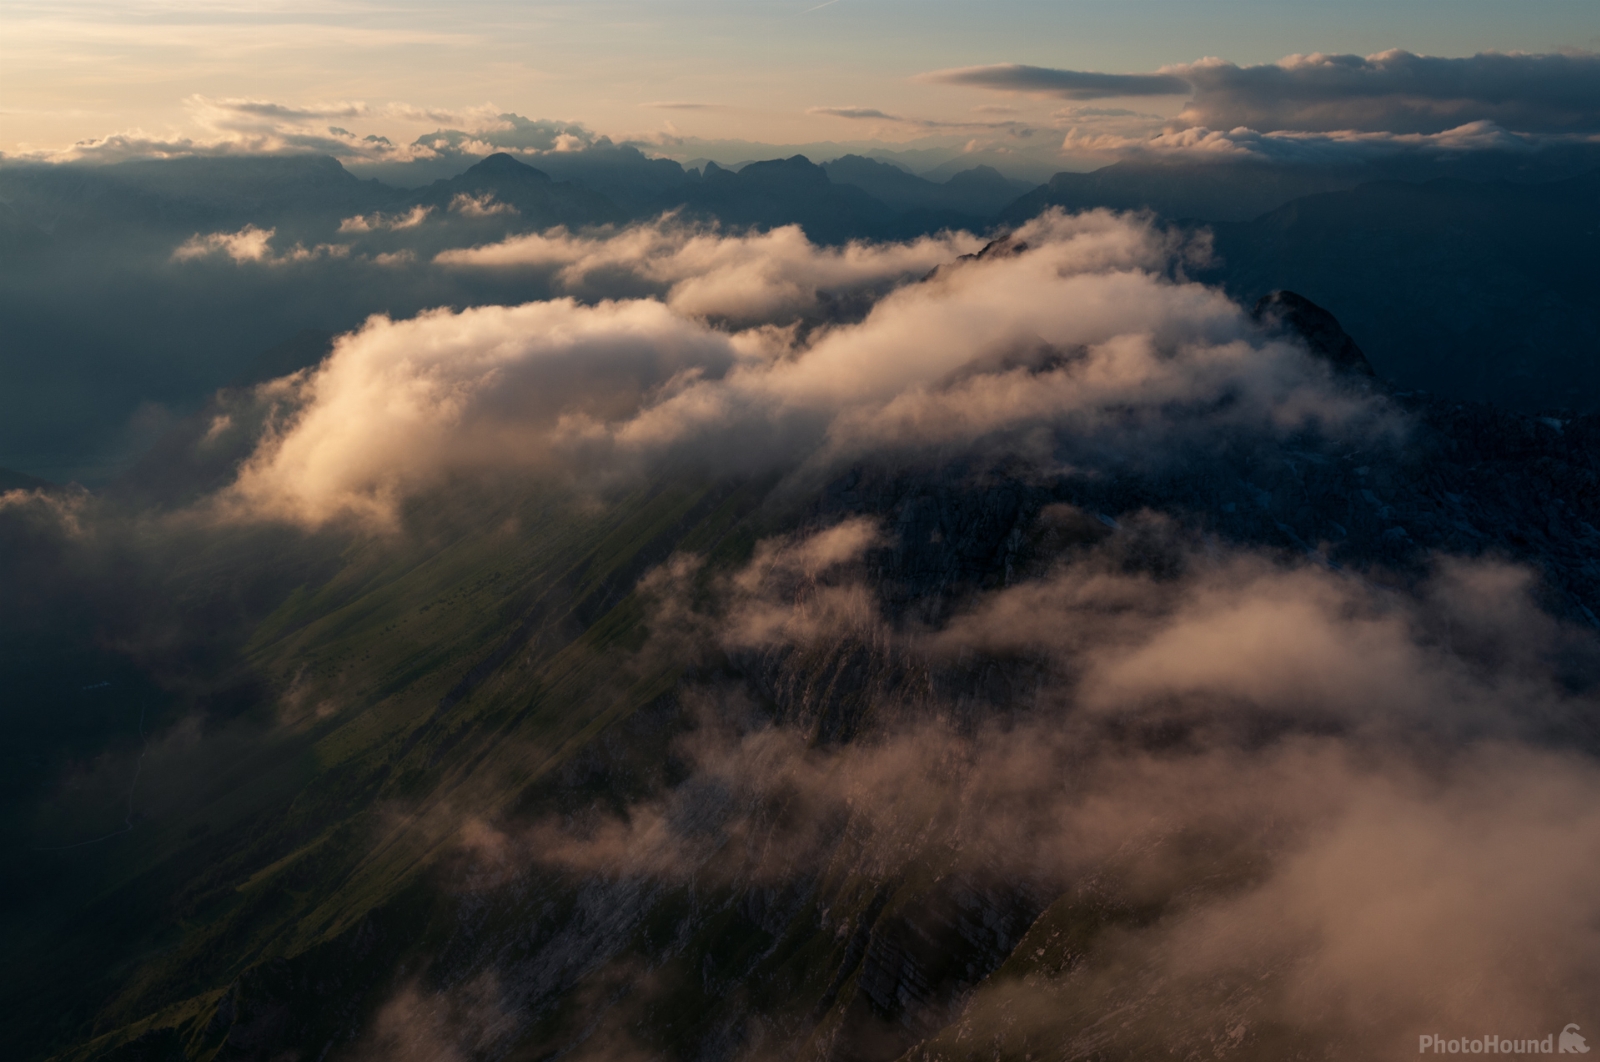 Image of Mt Krn (2244m) by Luka Esenko